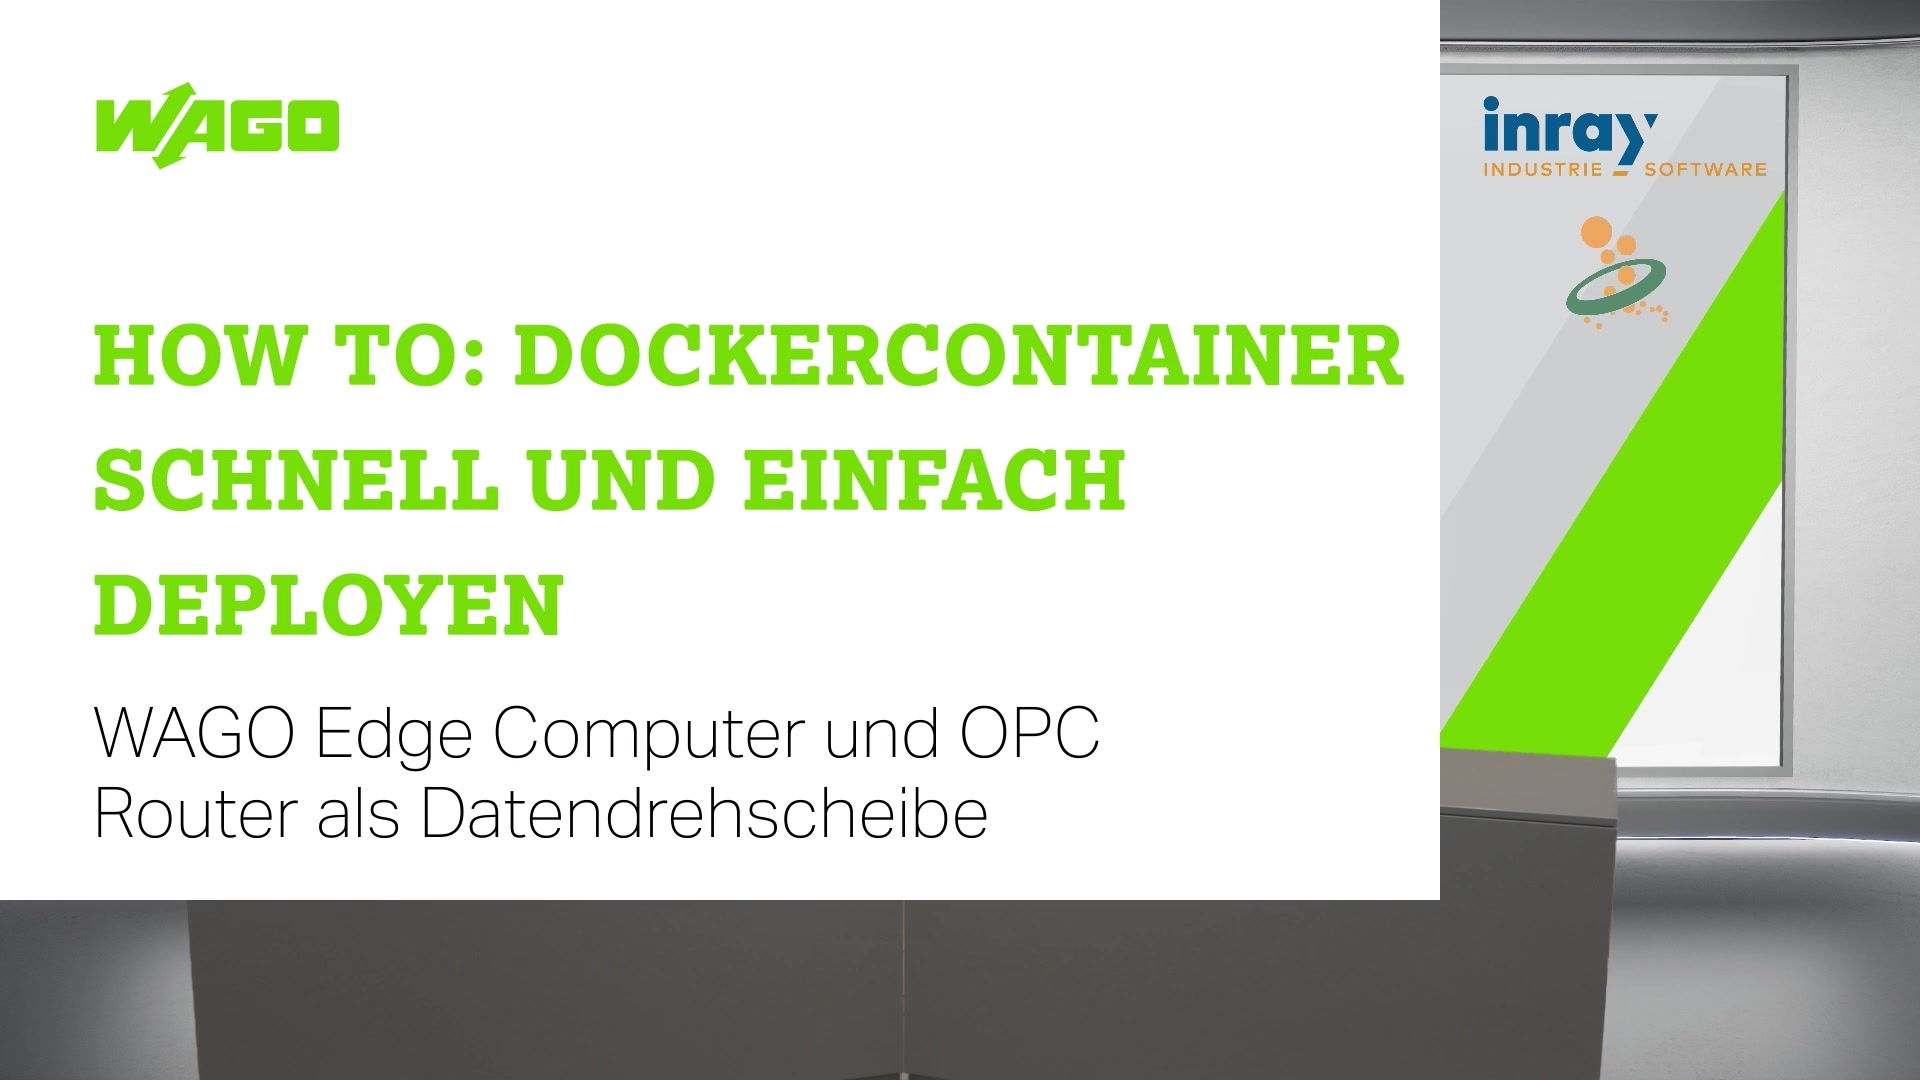 <p>How-to: Docker<sup>®</sup>-Container schnell und einfach deployen</p>